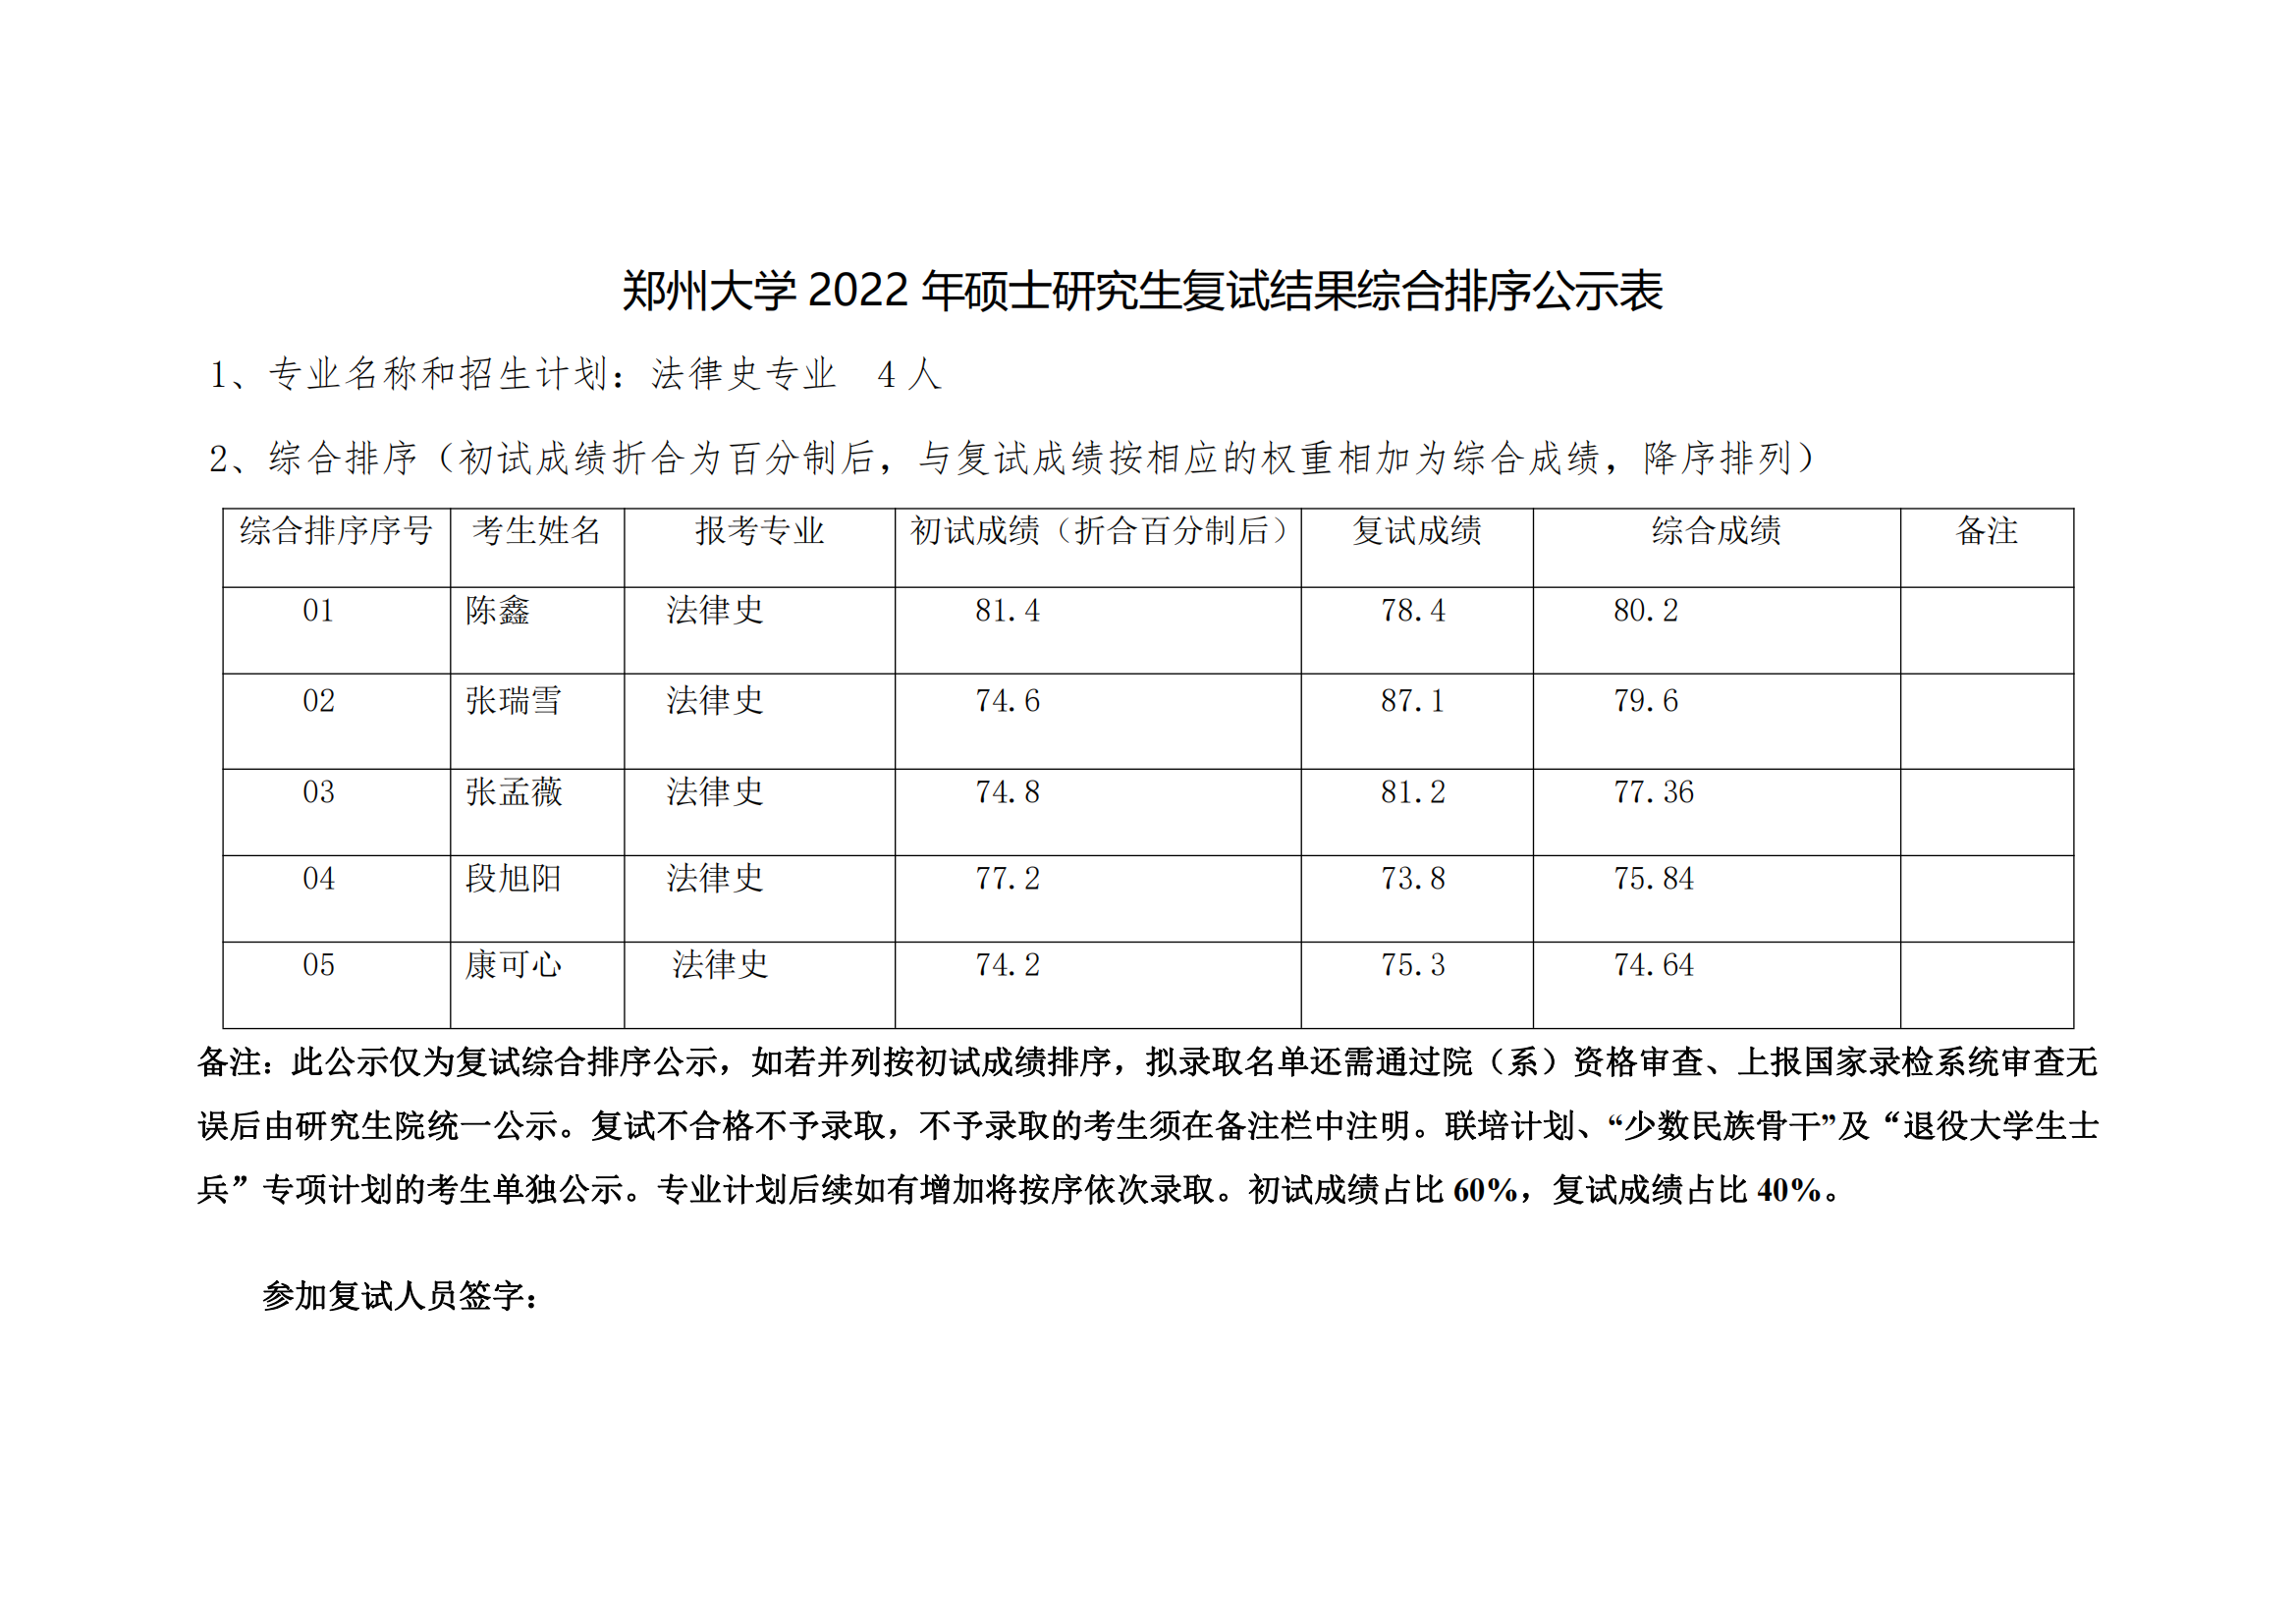 郑州大学 2022 年硕士研究生复试结果综合排序公示表【法律史】_00.png